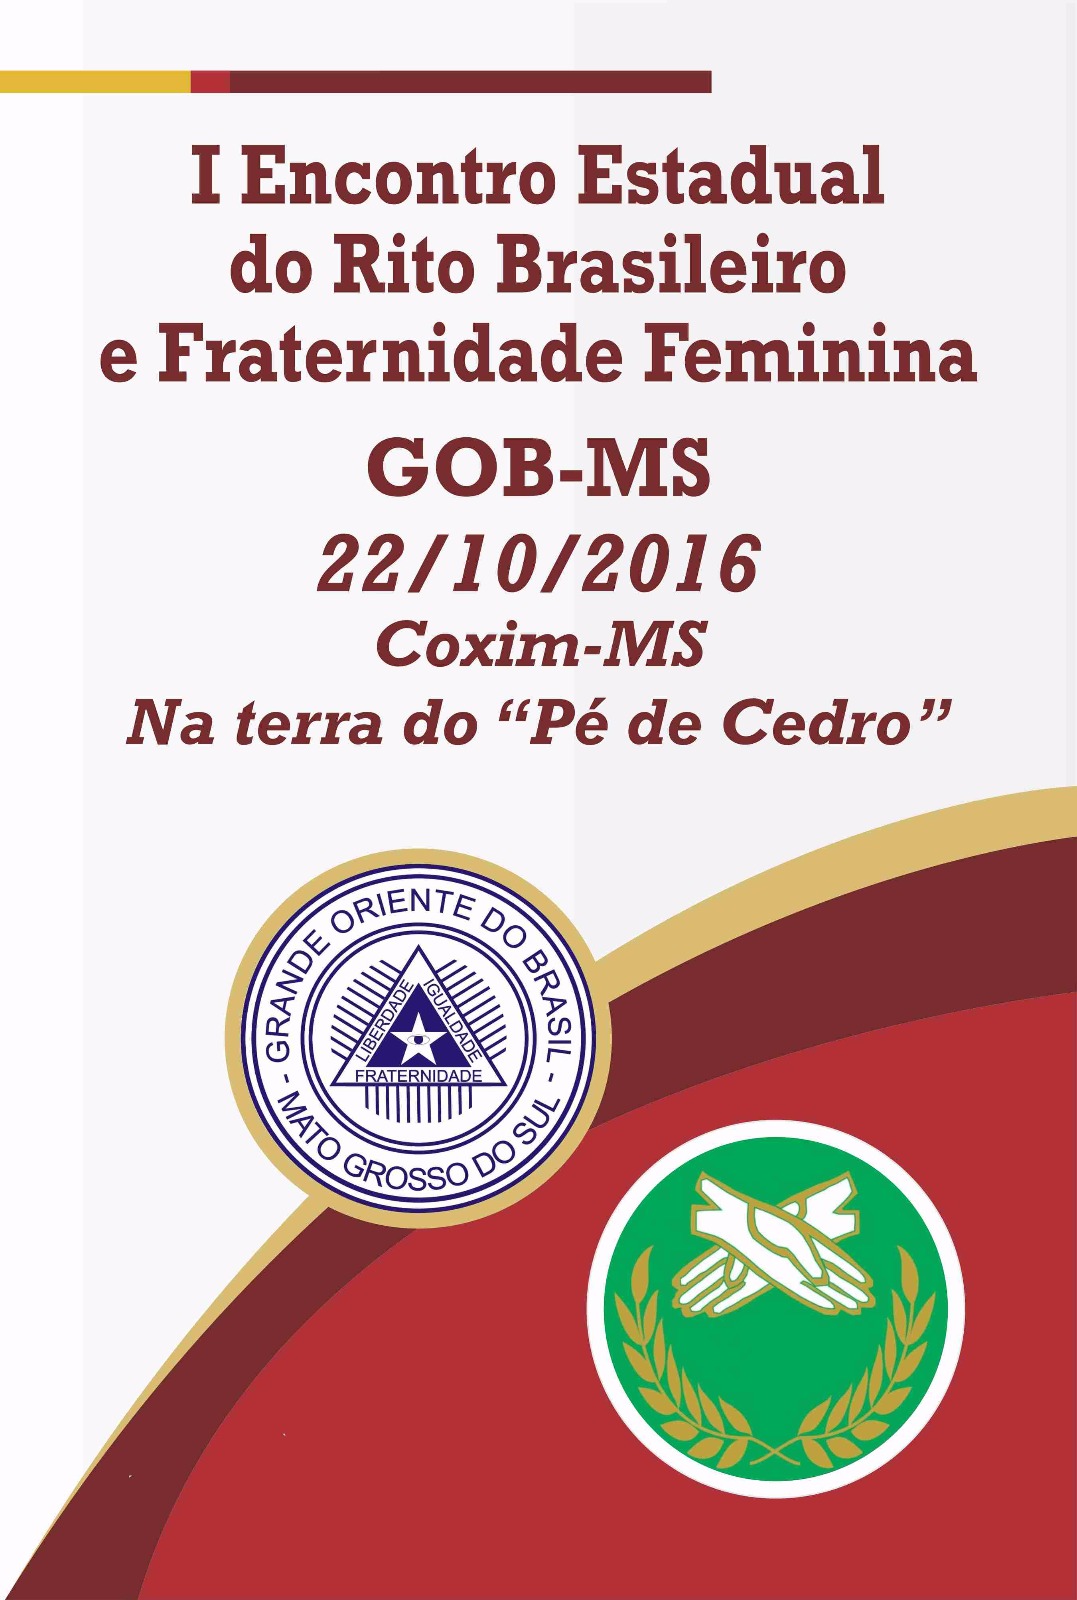 Read more about the article I Encontro Estadual do Rito Brasileiro e Fraternidade Feminina